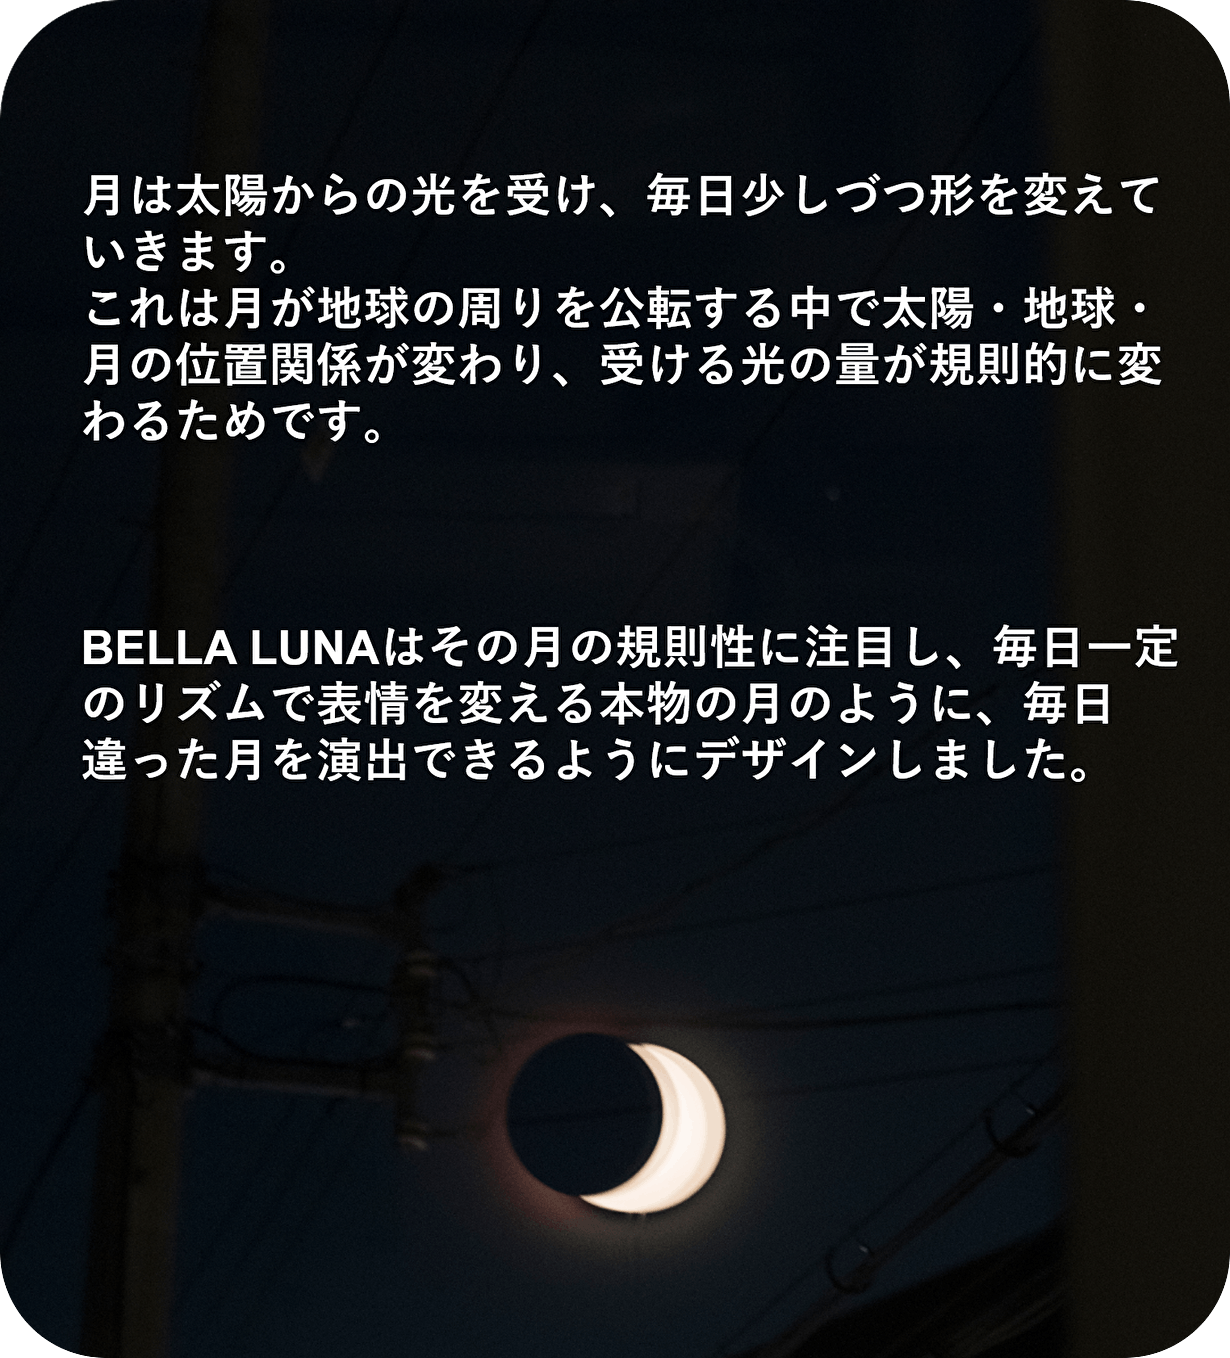 あなたのスペースを癒す優しい月の灯り【BELLA LUNA】 - CAMPFIRE